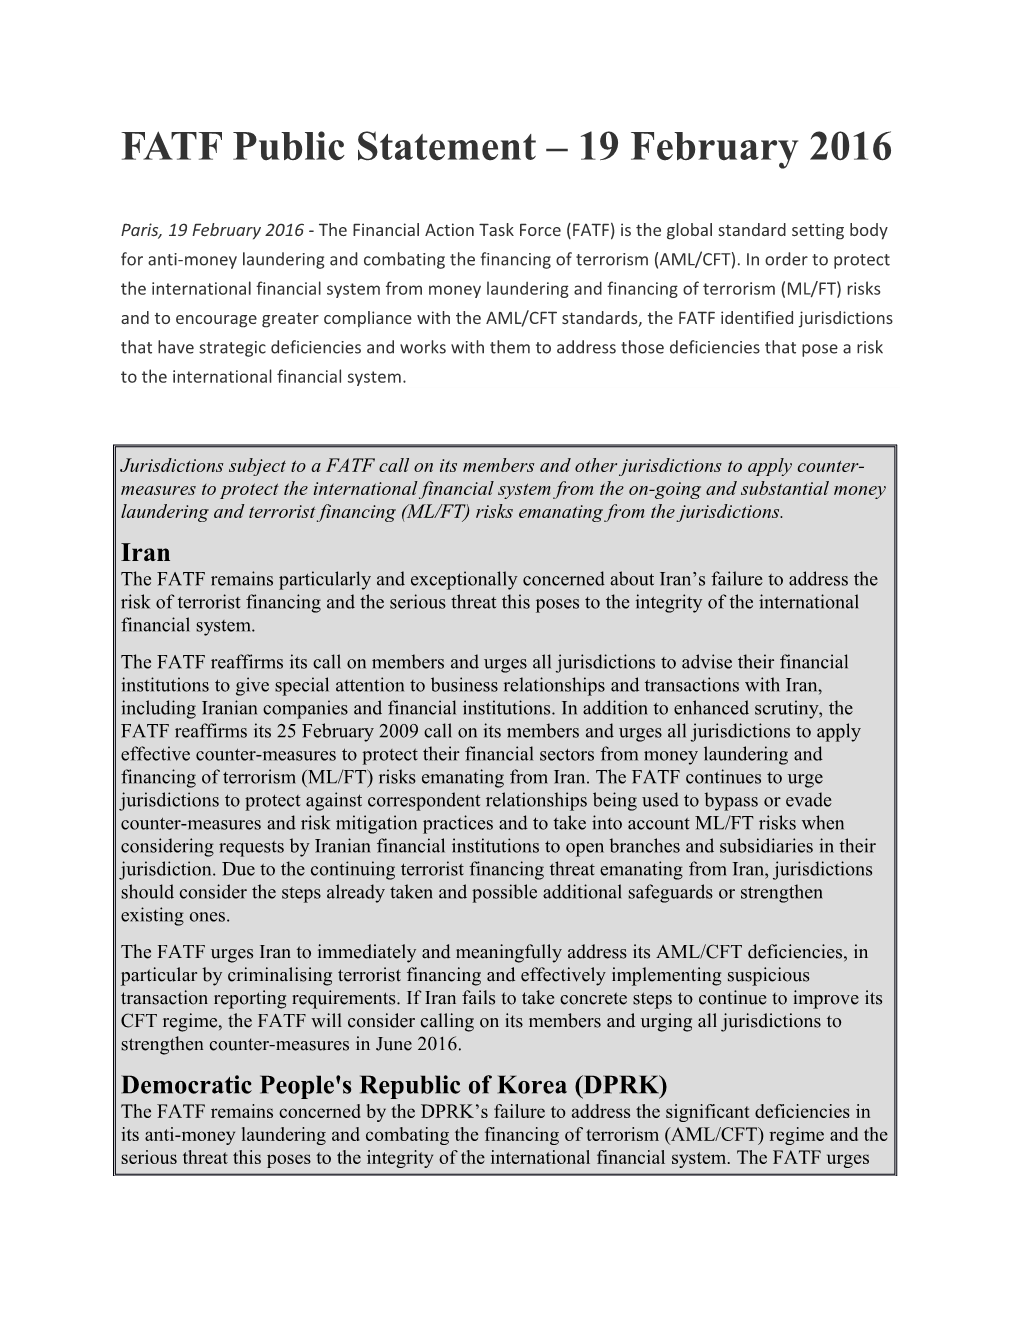 FATF Public Statement 19 February 2016